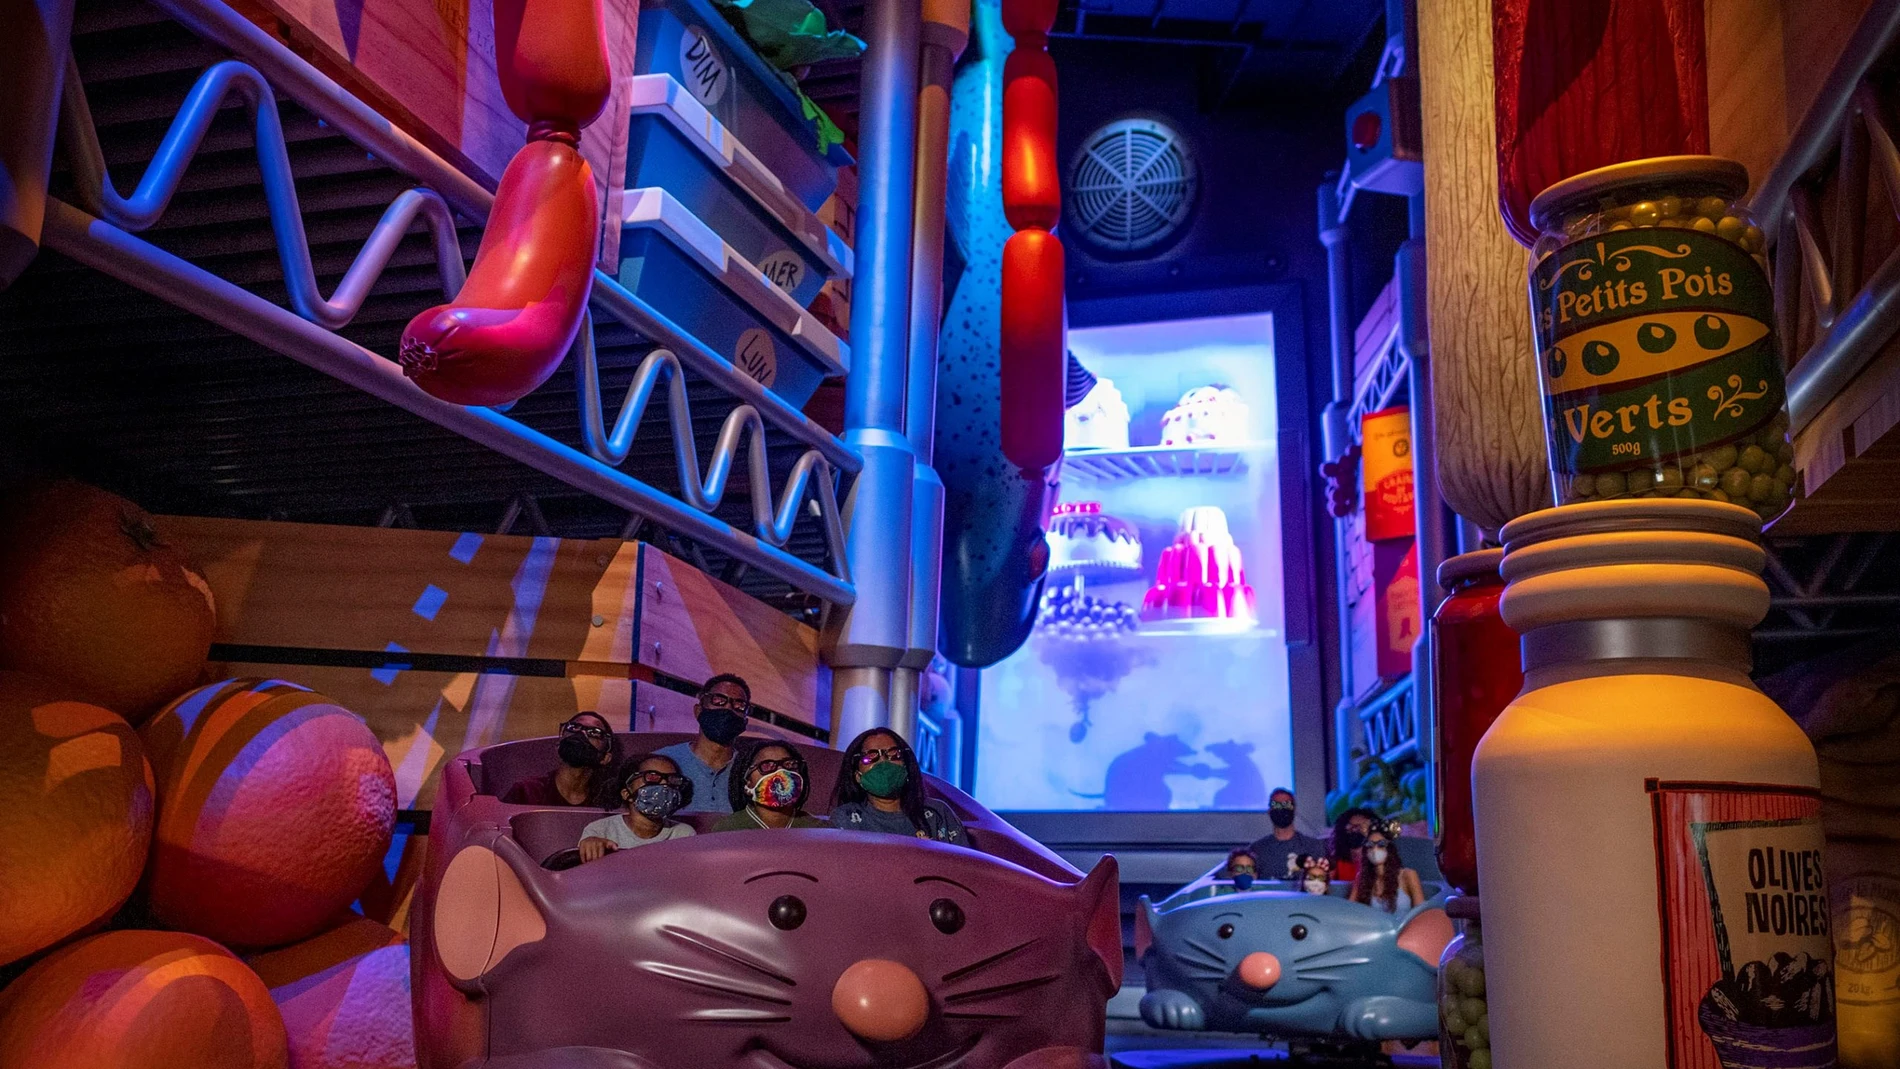 Disney celebrará 50 años en Orlando con una atracción basada en "Ratatouille"